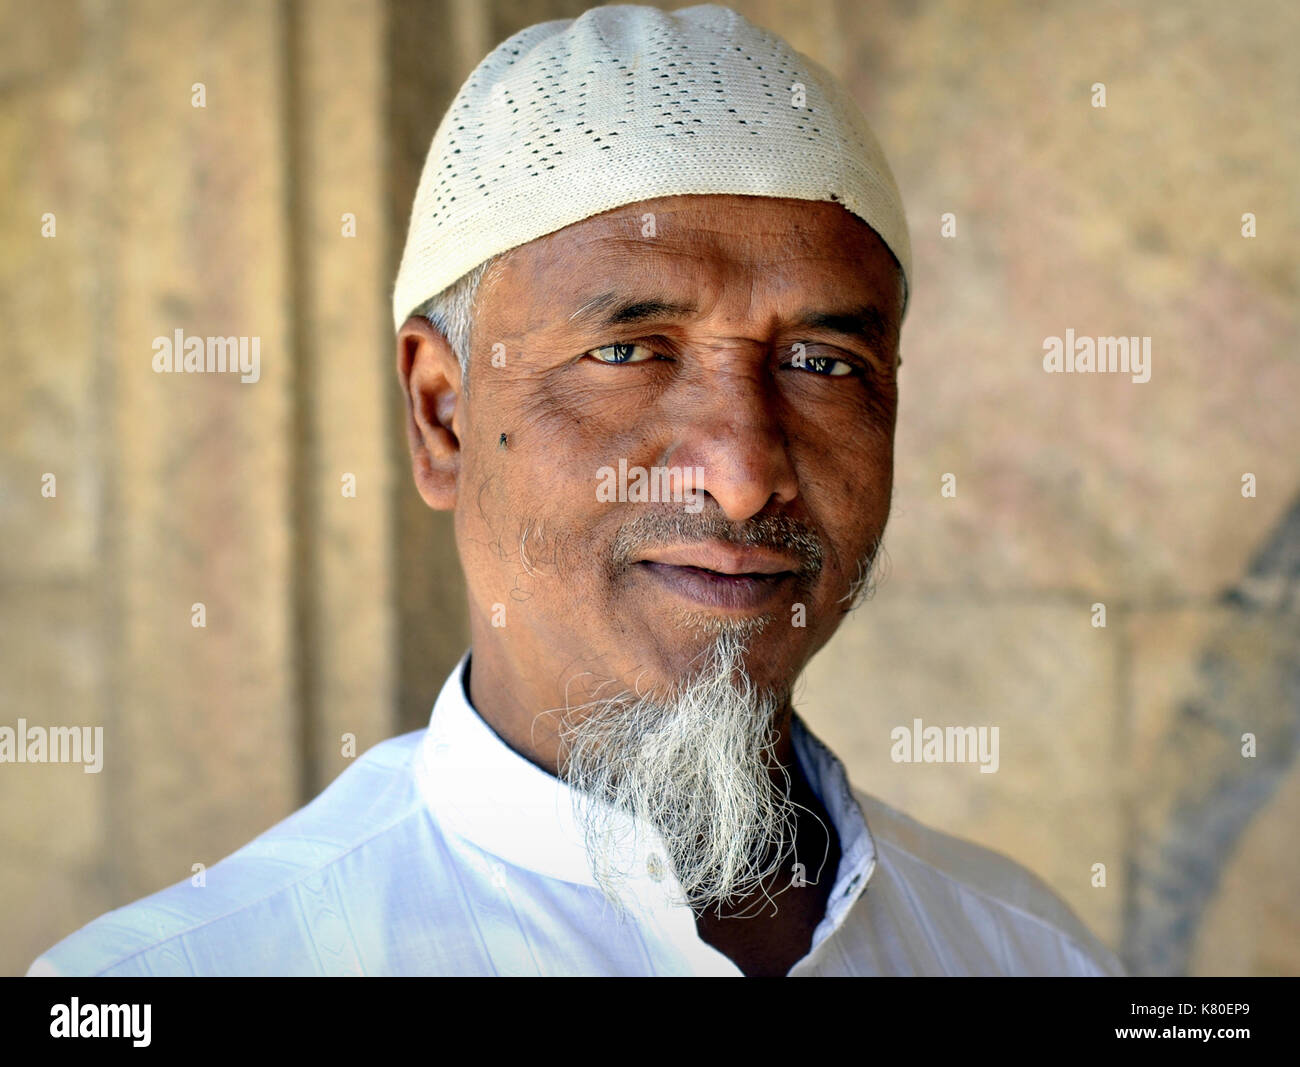 Uomo musulmano indiano di mezza età con capretto musulmano che indossa un cappuccio di preghiera islamico bianco (taqiyah) e pone per la macchina fotografica. Foto Stock